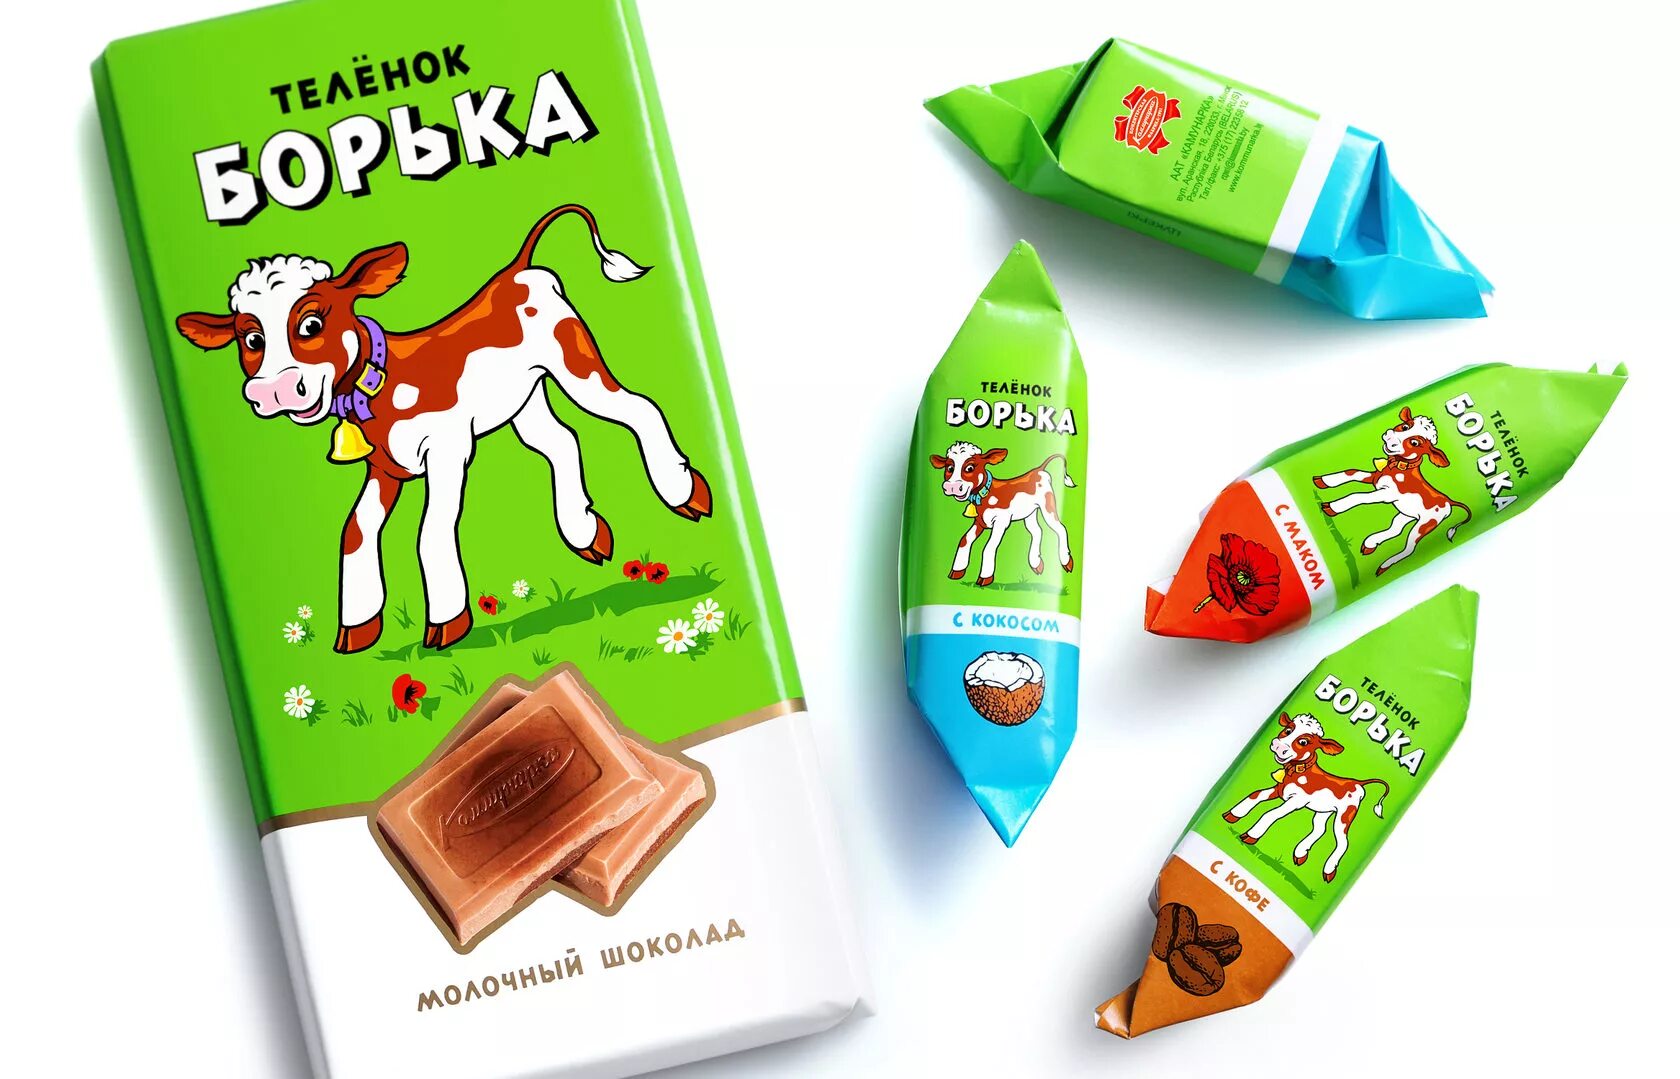 Коровка упаковка. Этикетка конфеты. Дизайн упаковки шоколадных конфет. Конфеты теленок Борька. Дизайн упаковки молочного шоколада.